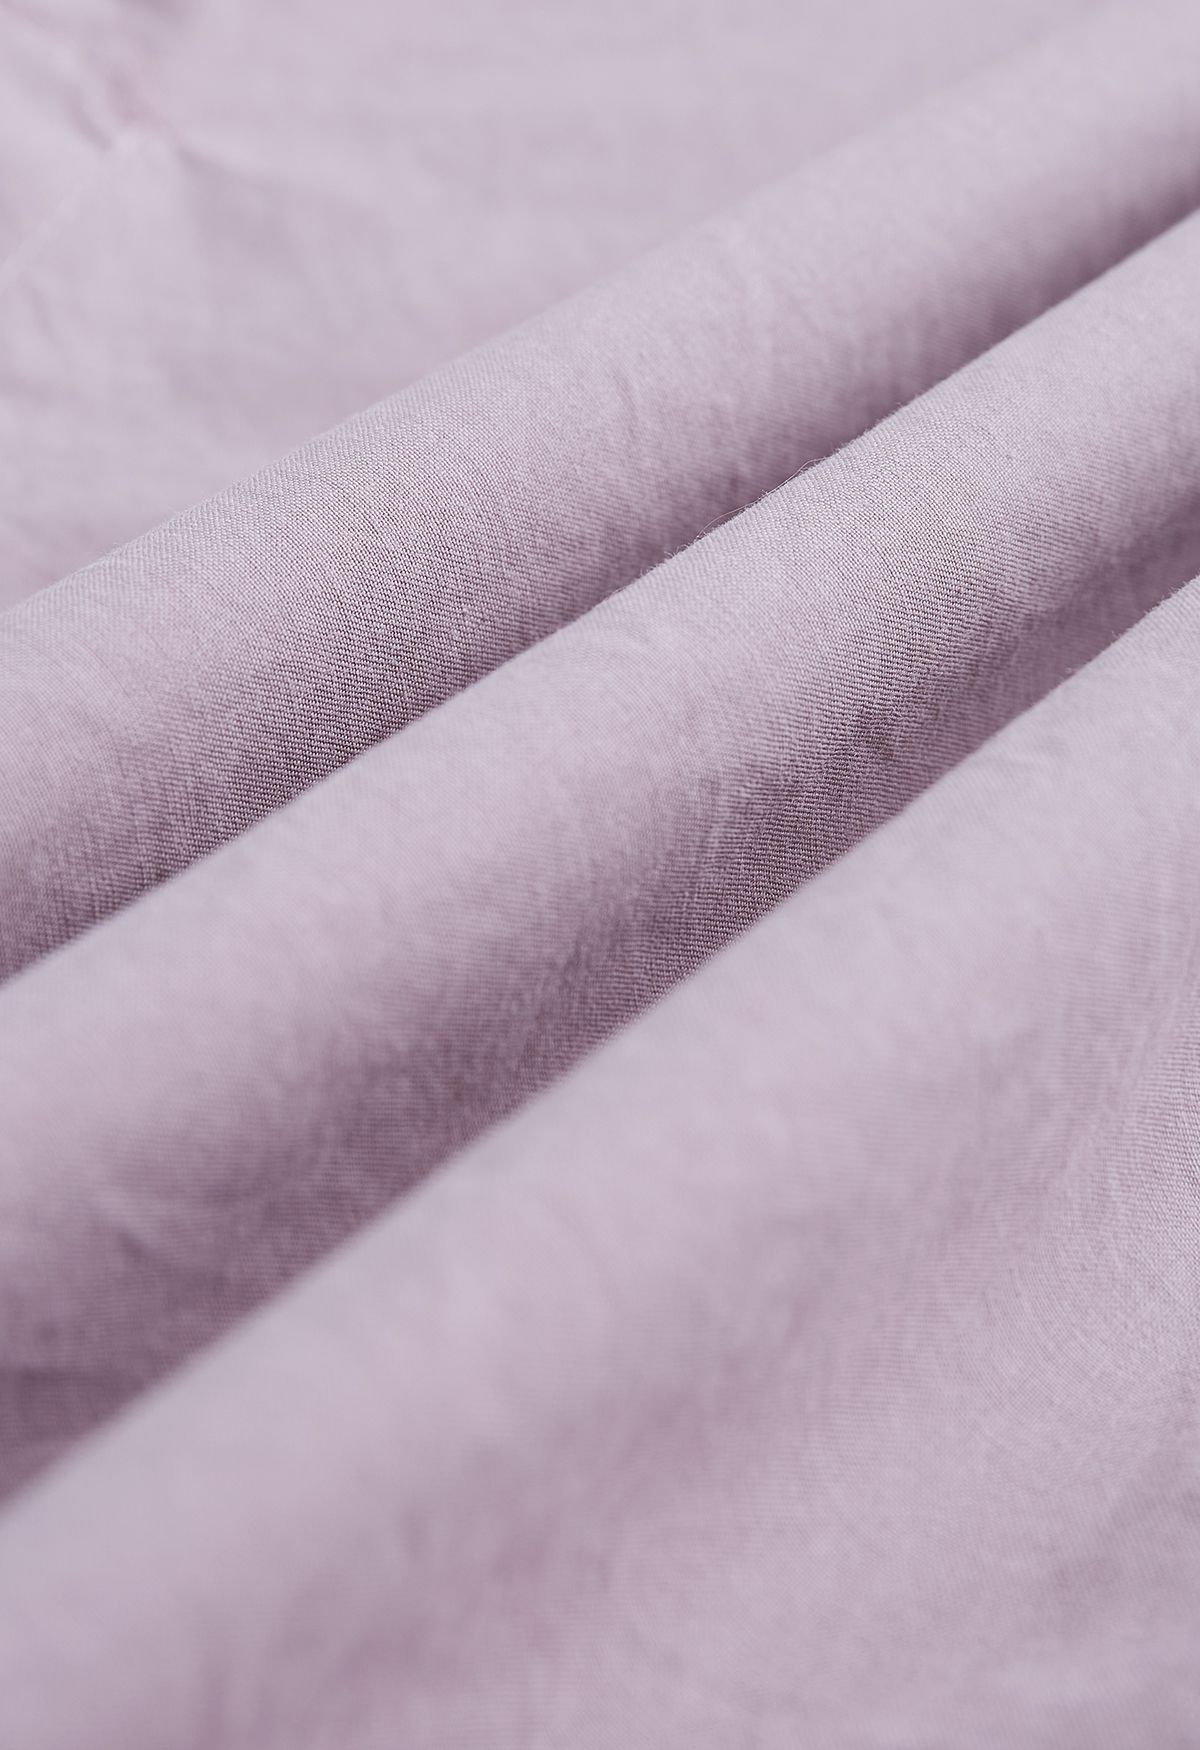 Chemise boutonnée en coton à manches avec cordon de serrage en vieux rose